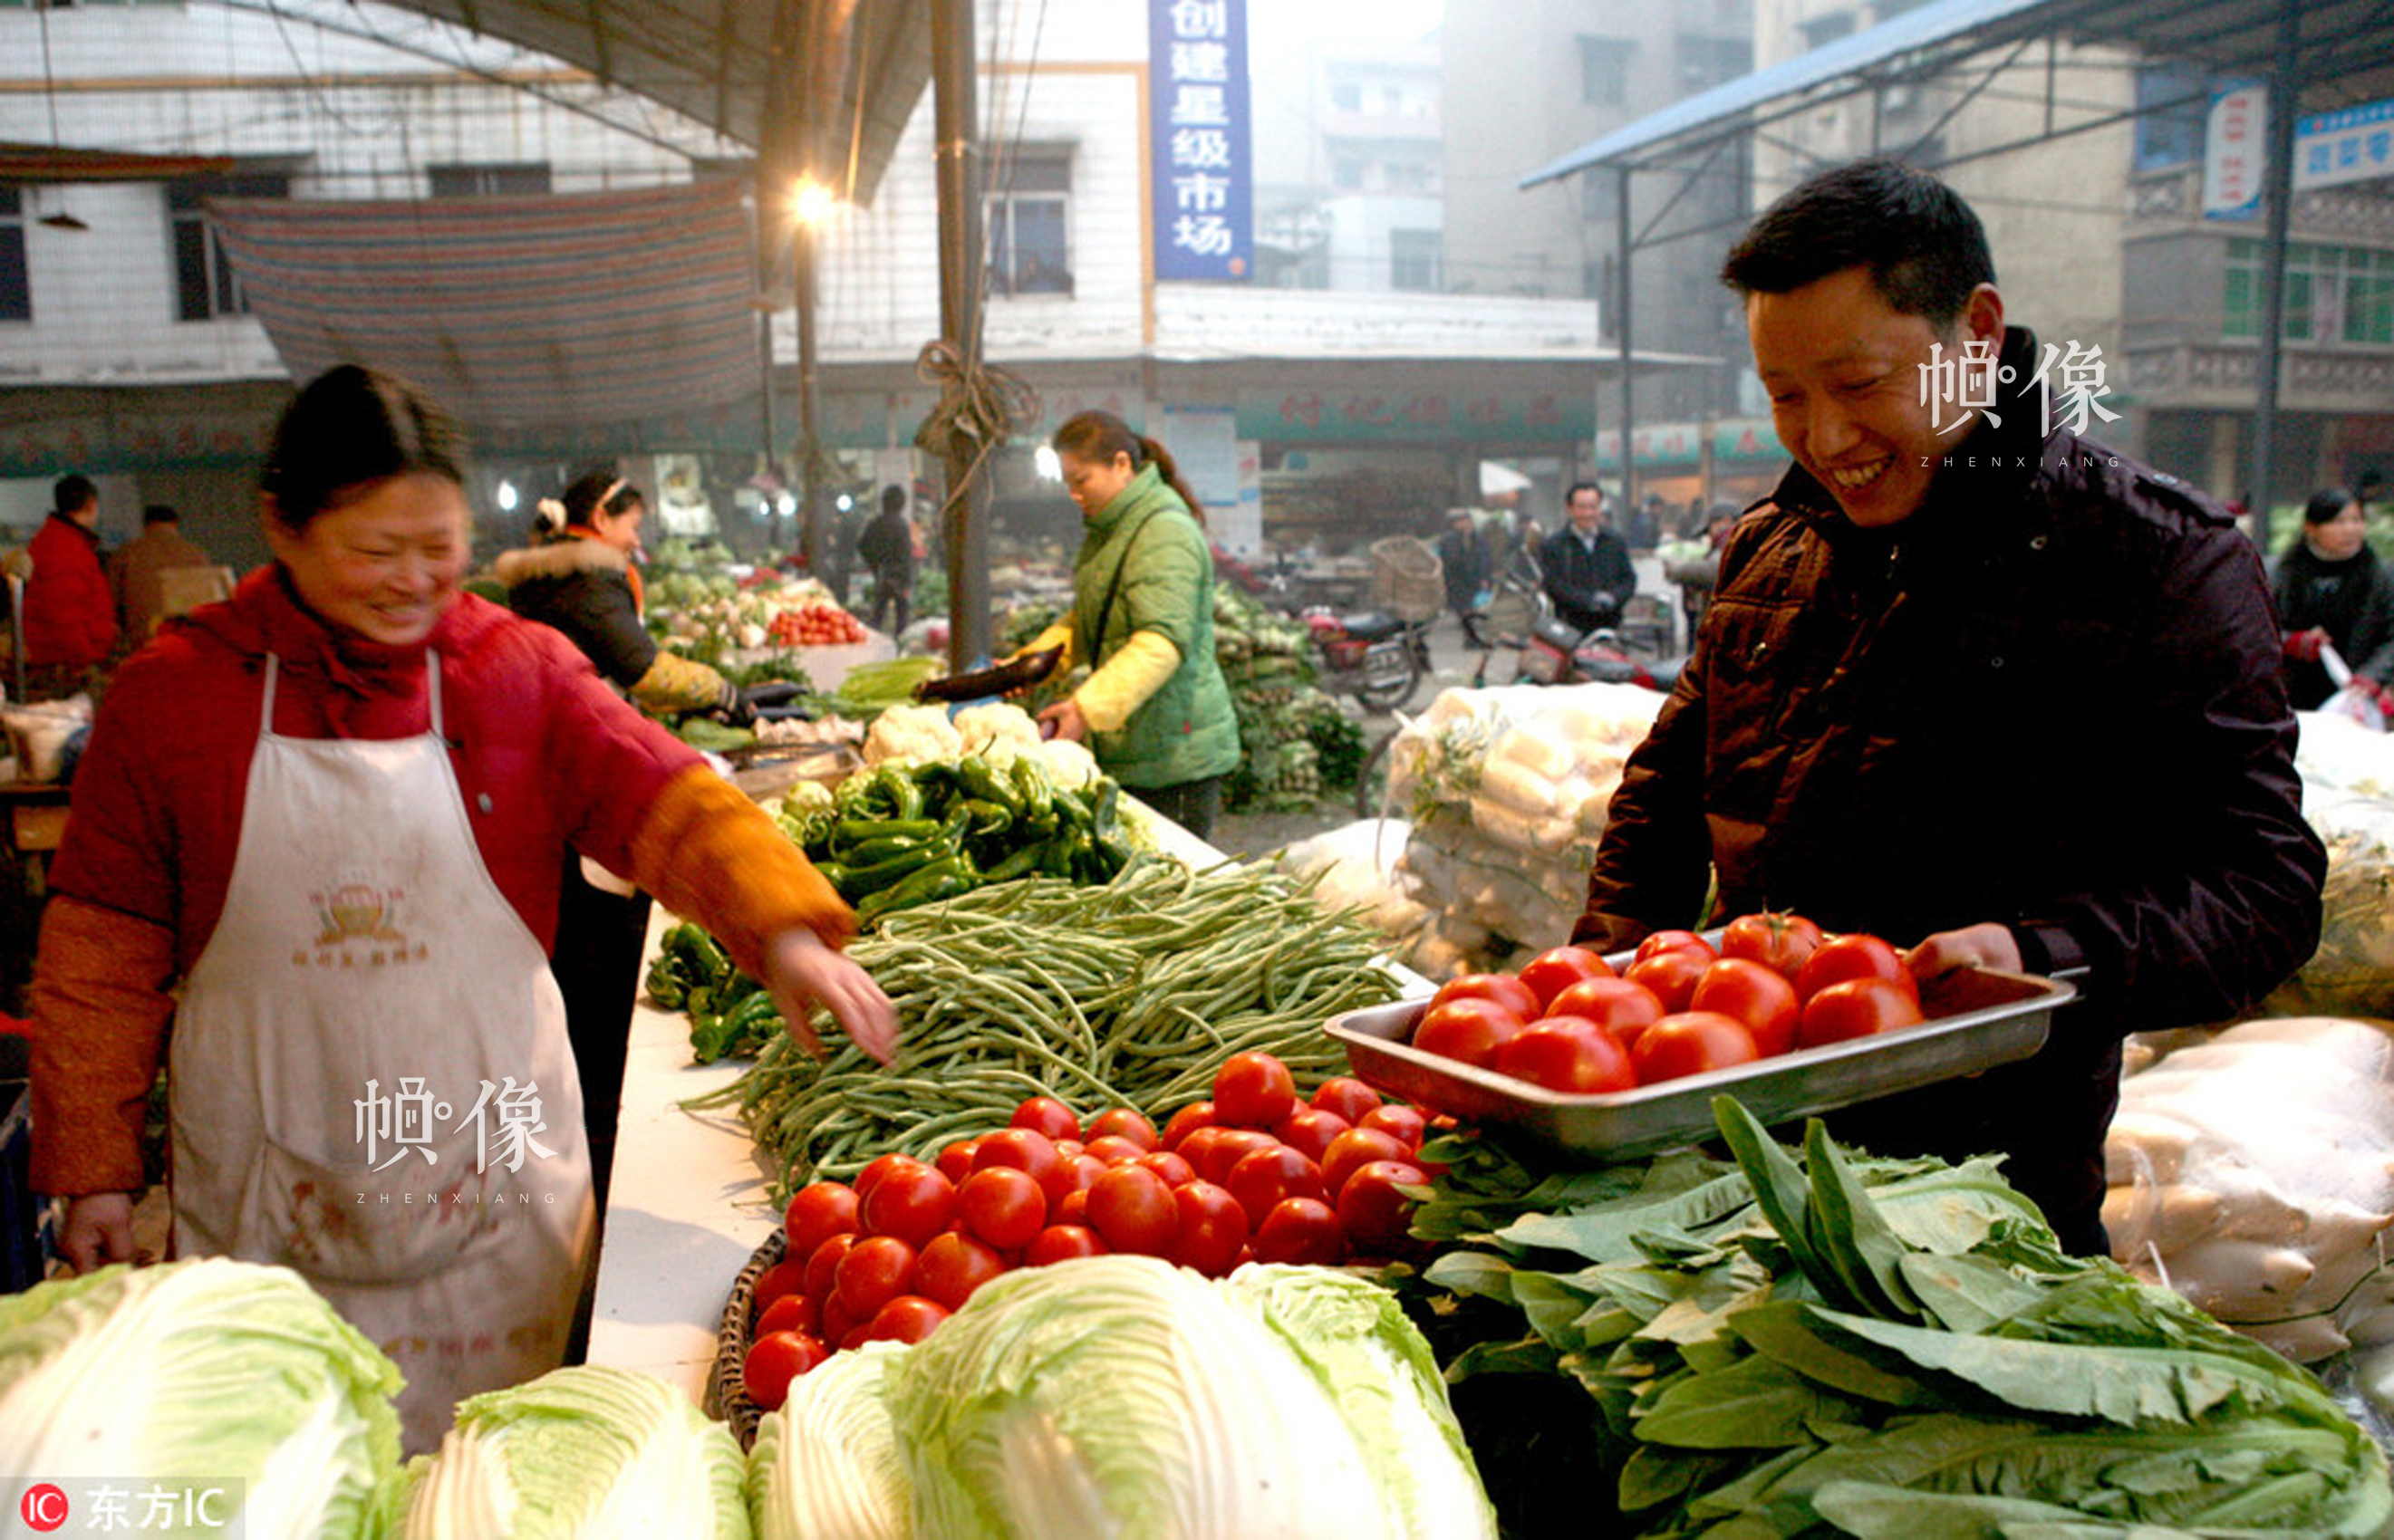 第32期:国人买菜方式变革:从逛菜市场到送菜进家